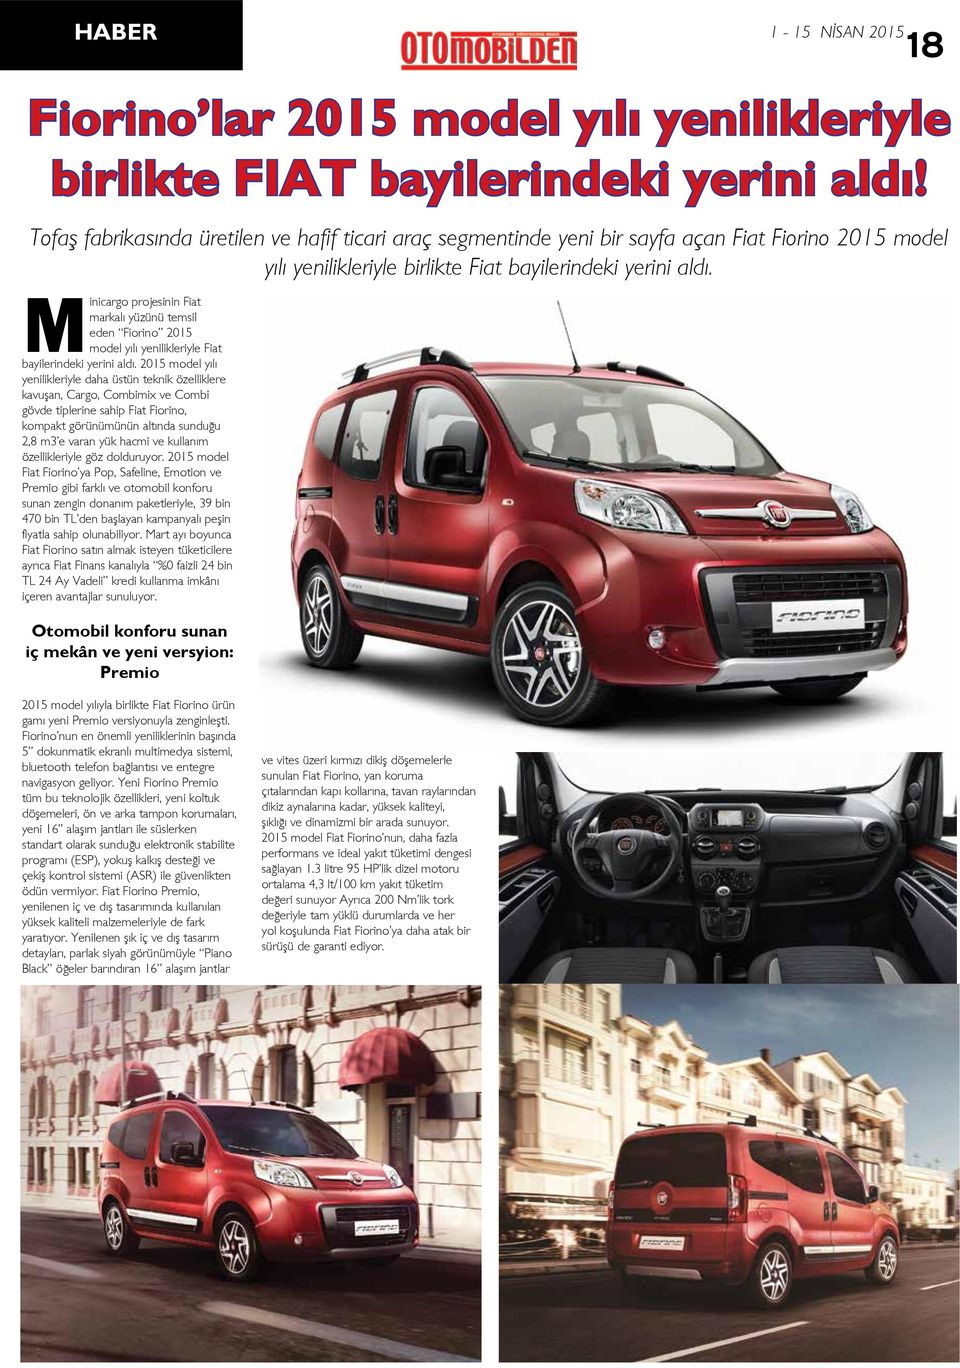 Minicargo projesinin Fiat markalı yüzünü temsil eden Fiorino 2015 model yılı yenilikleriyle Fiat bayilerindeki yerini aldı.